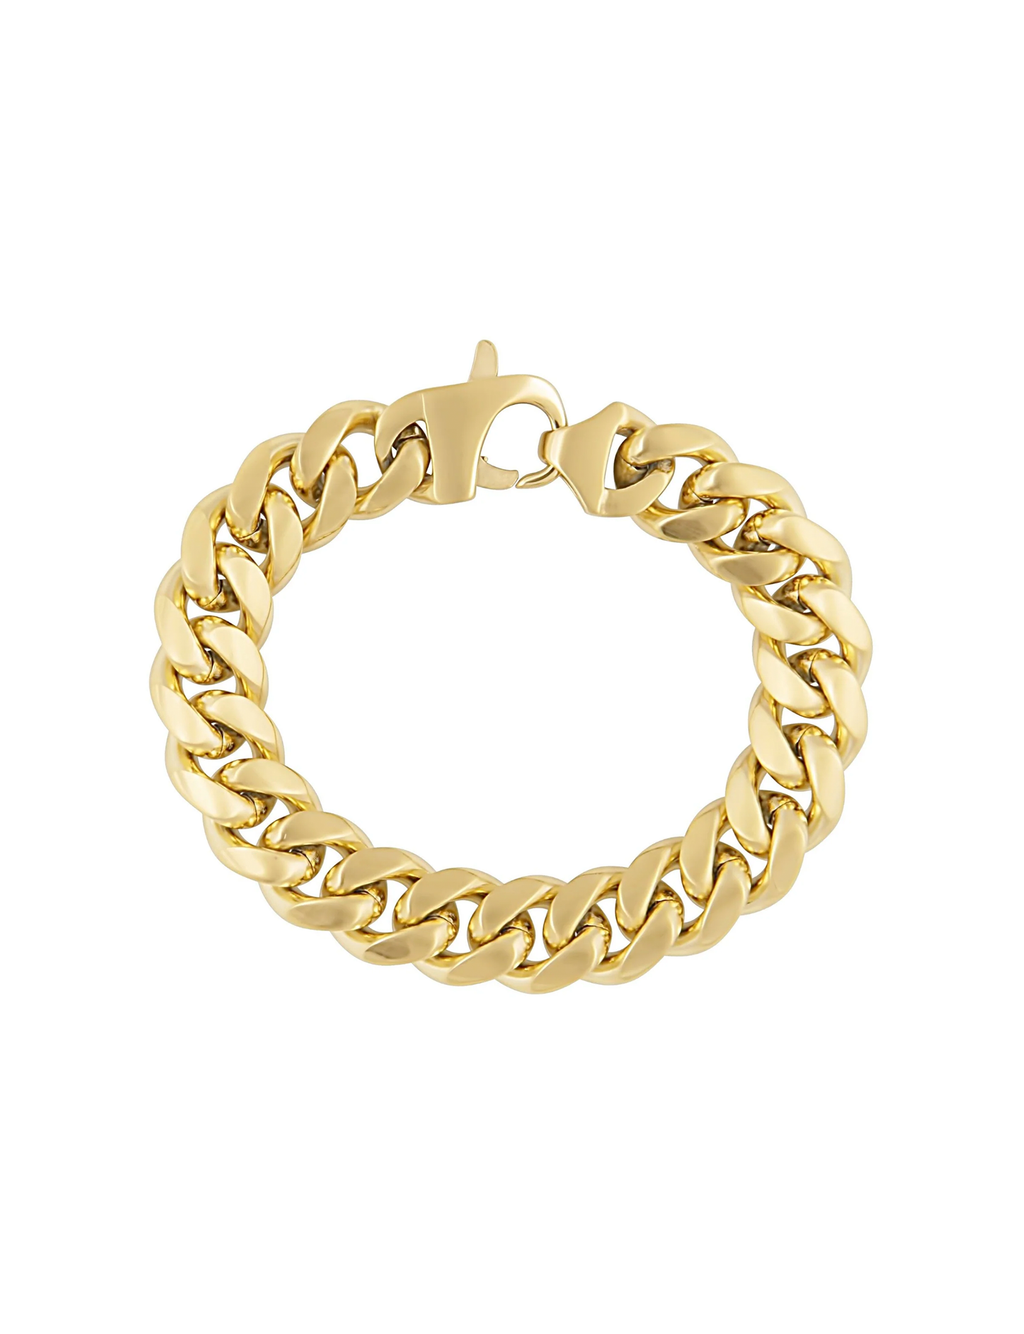 Blaire Chunky Bracelet, 7.5" Gold